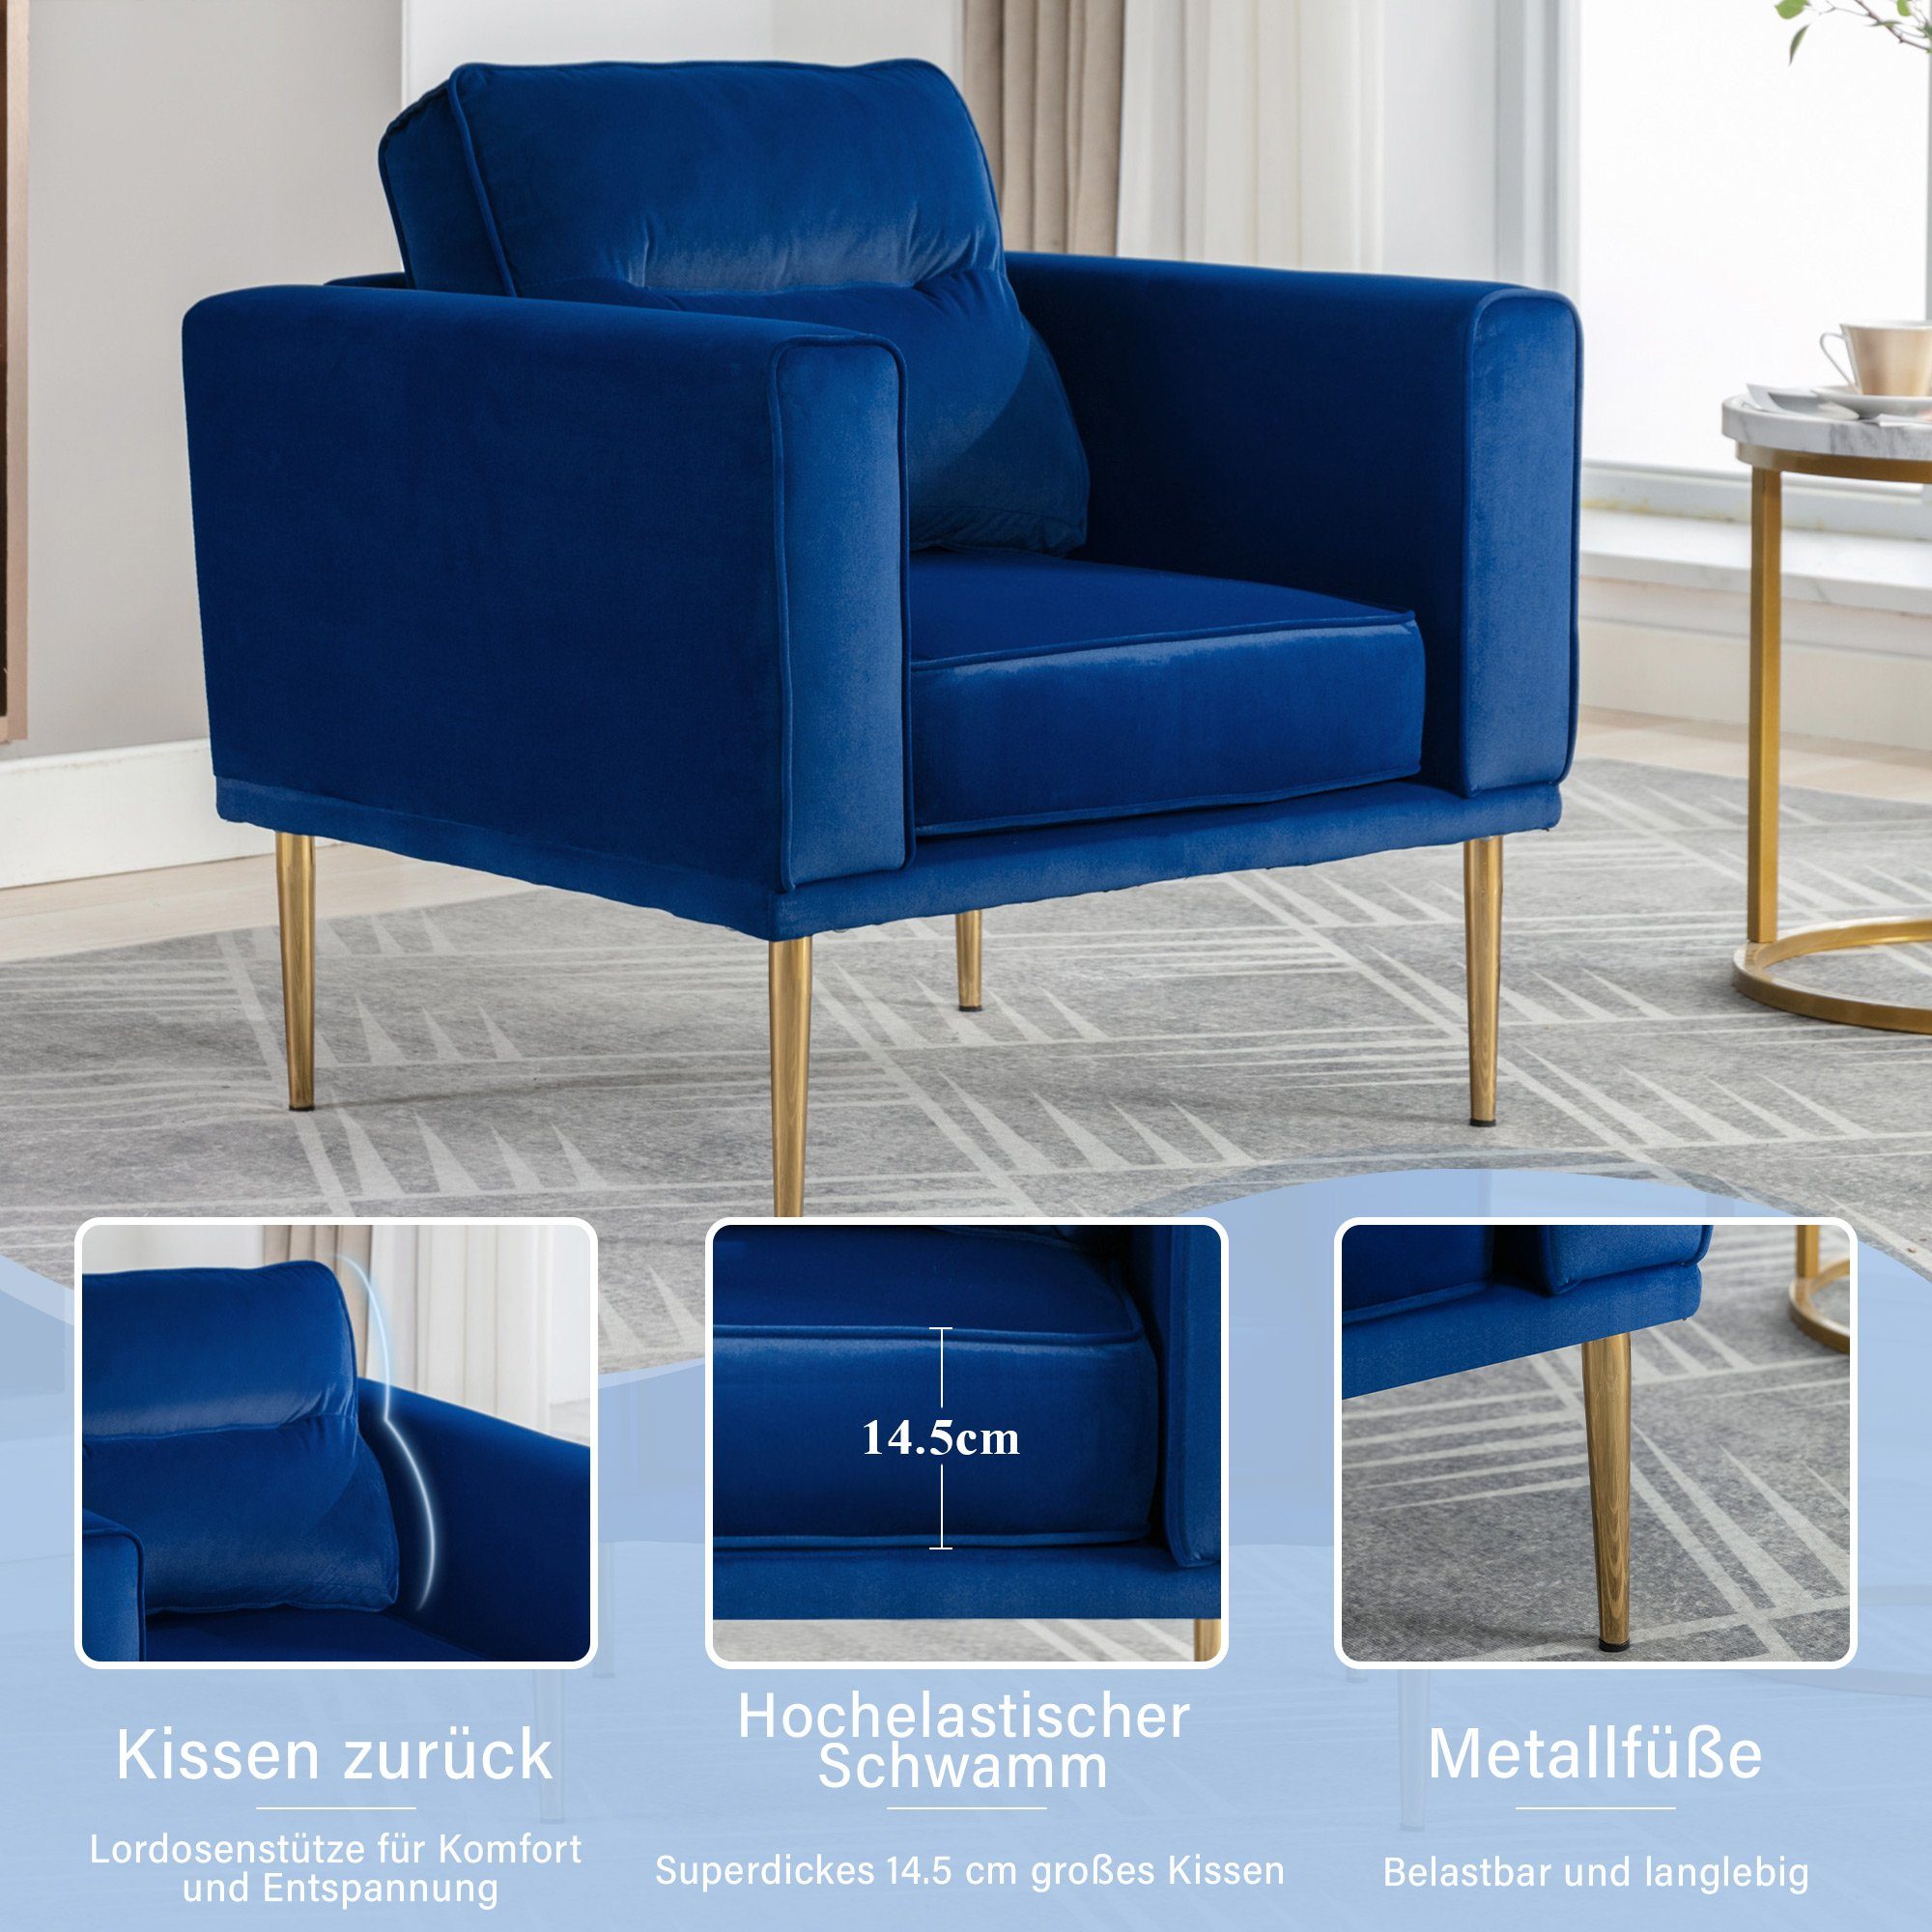 Merax Sessel mit goldenen Metallbeine, Ohrensessel, Relaxsessel, Samtbezug Blau Einzelsofa, Ruhesessel